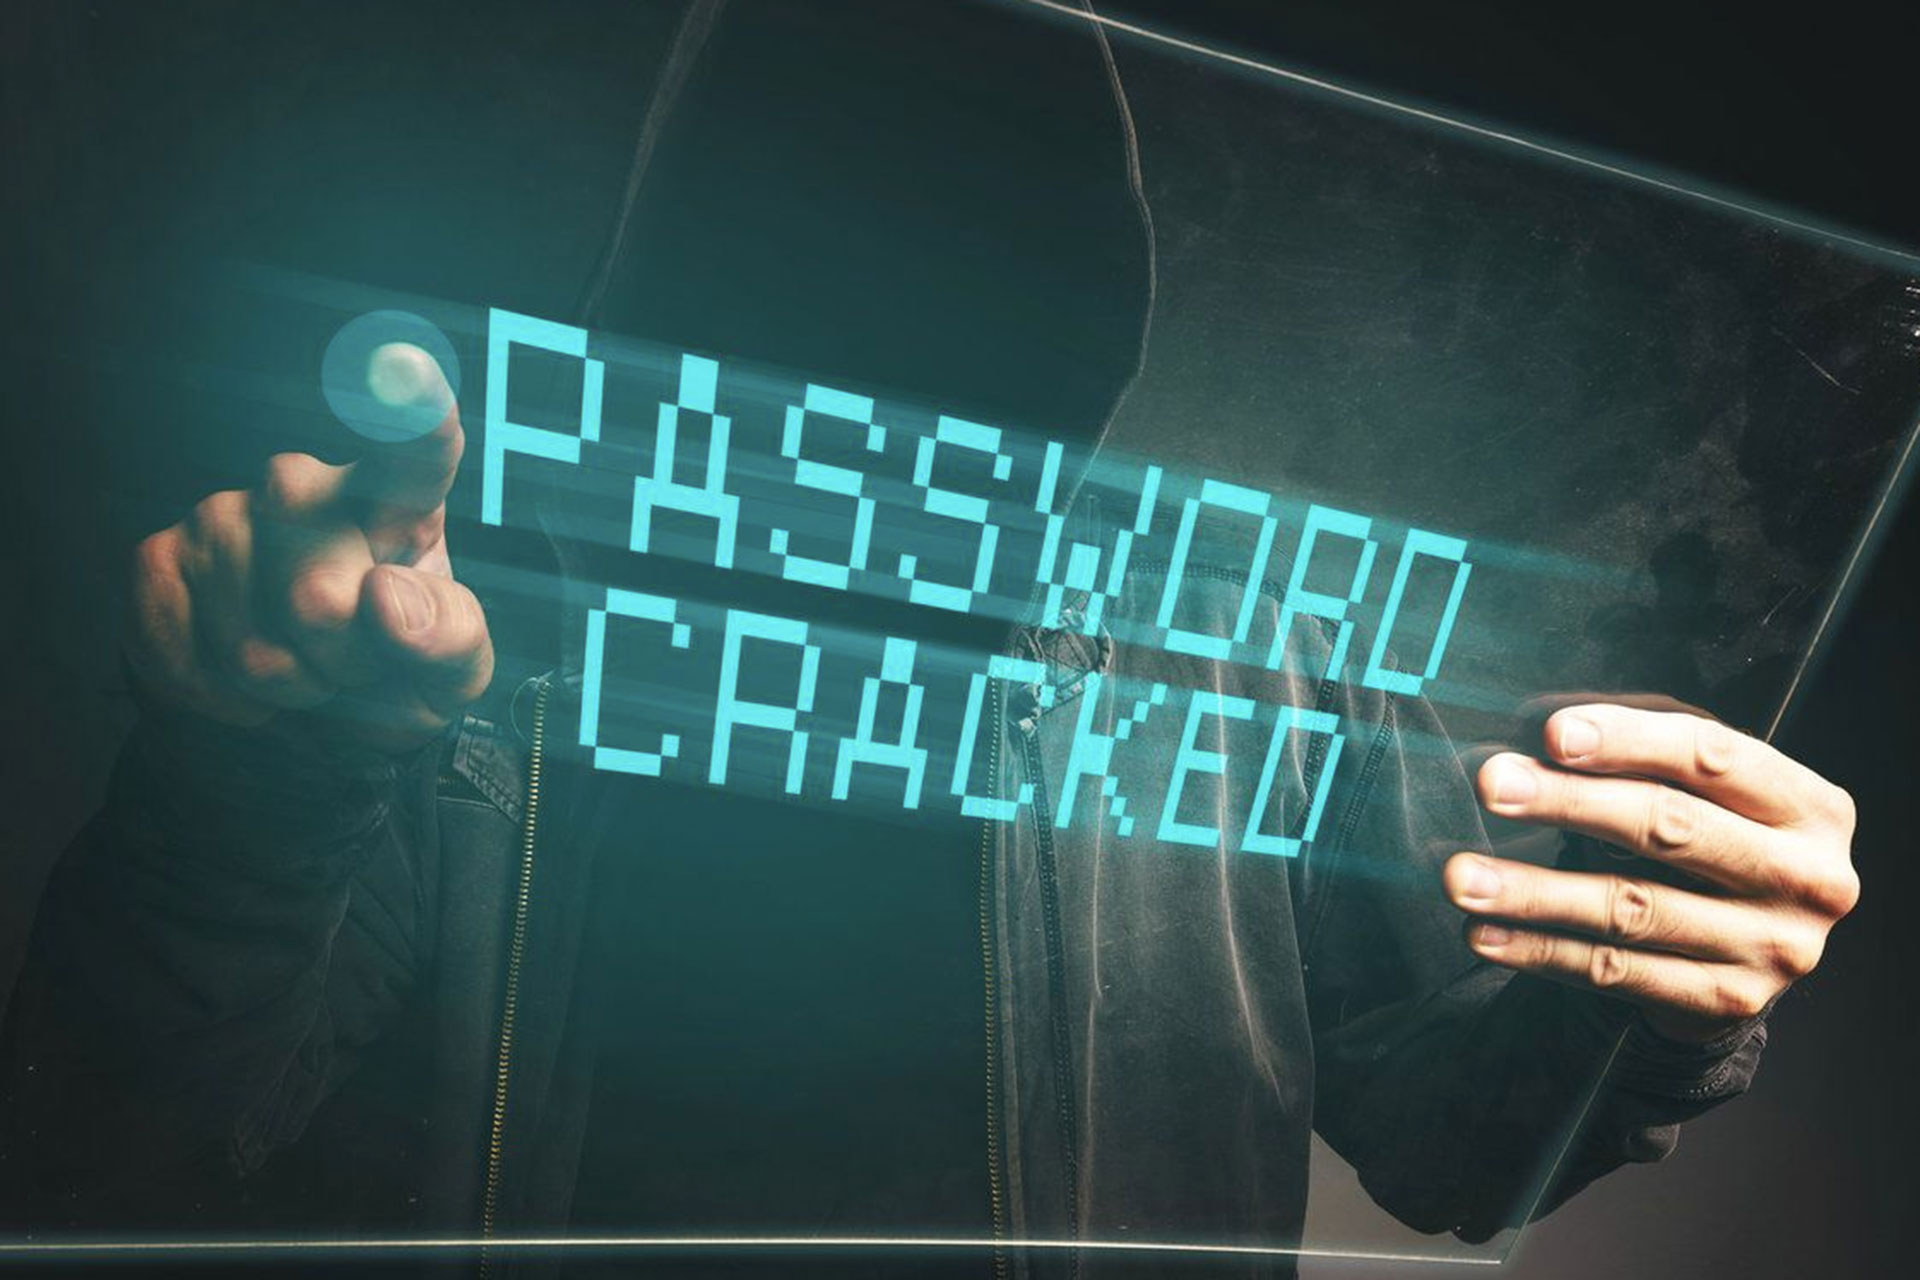 بدترین رمزهای عبور ۲۰۲۰ مشخص شدند